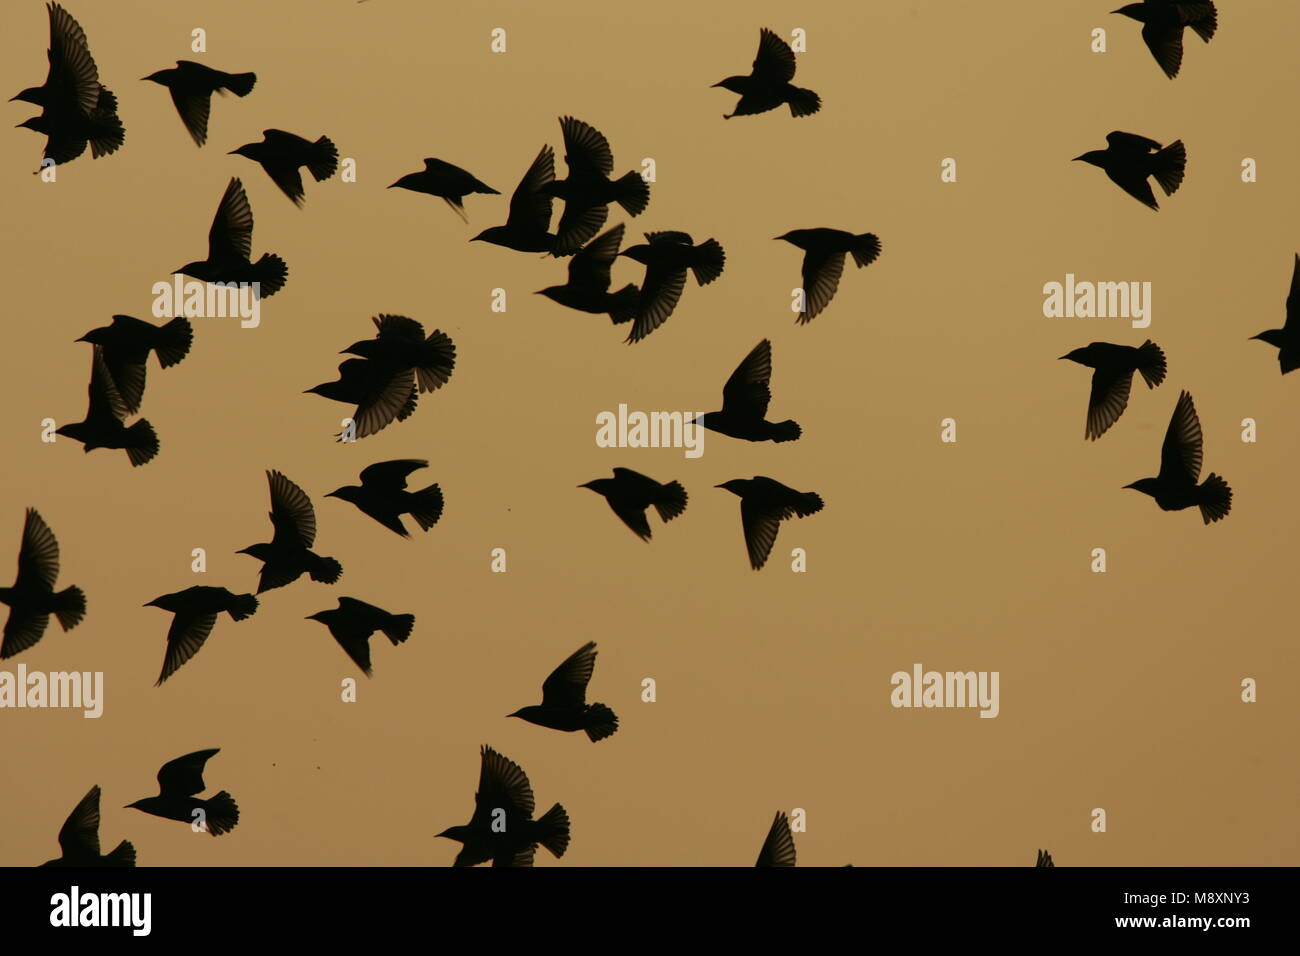 Common Starling Herde fliegen; Spreeuw groep Vliegend Stockfoto